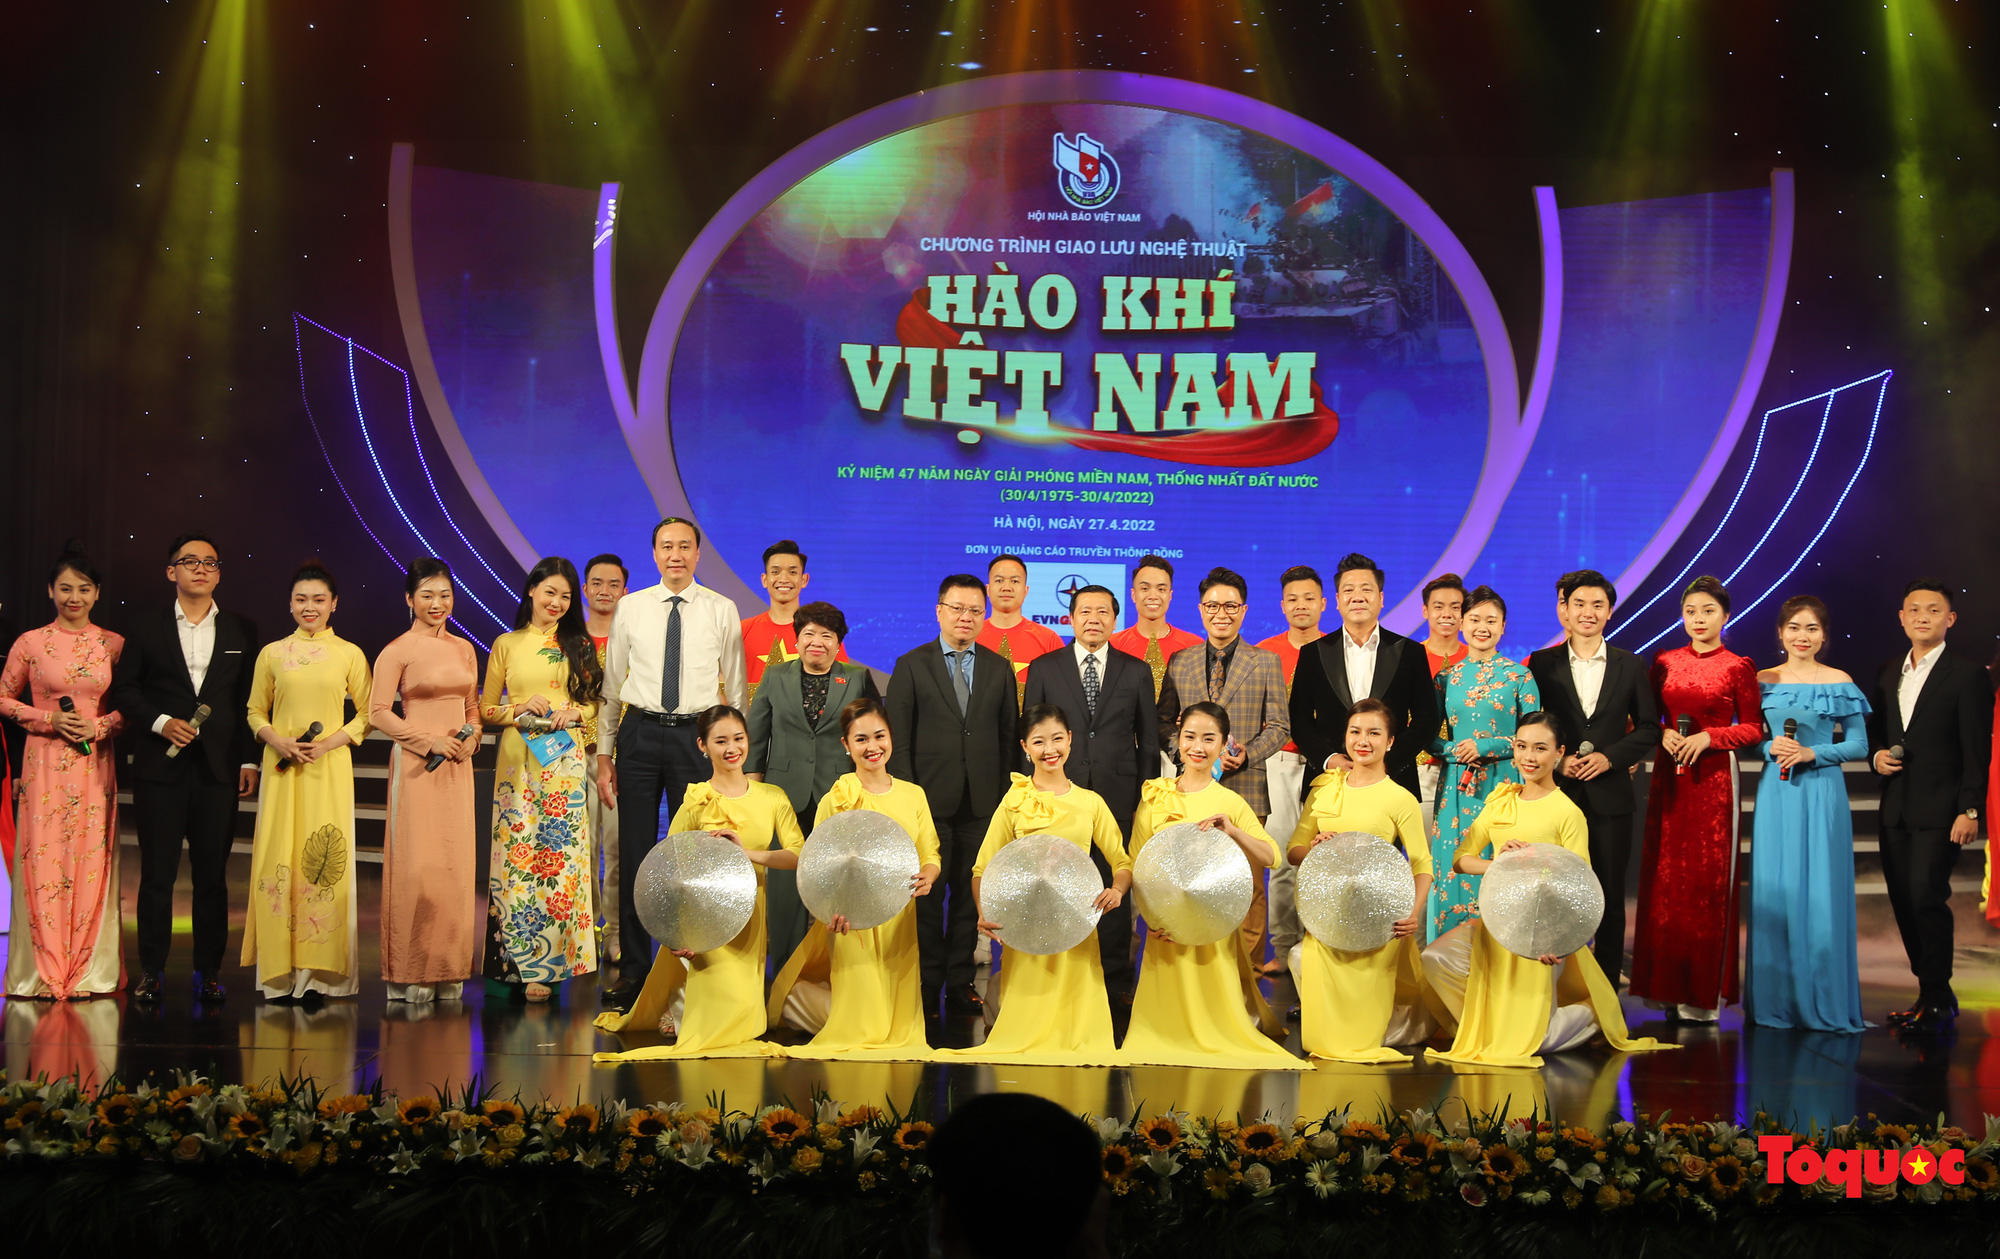 Hào hùng không khí 30/4 trong chương trình nghệ thuật “Hào khí Việt Nam” - Ảnh 25.